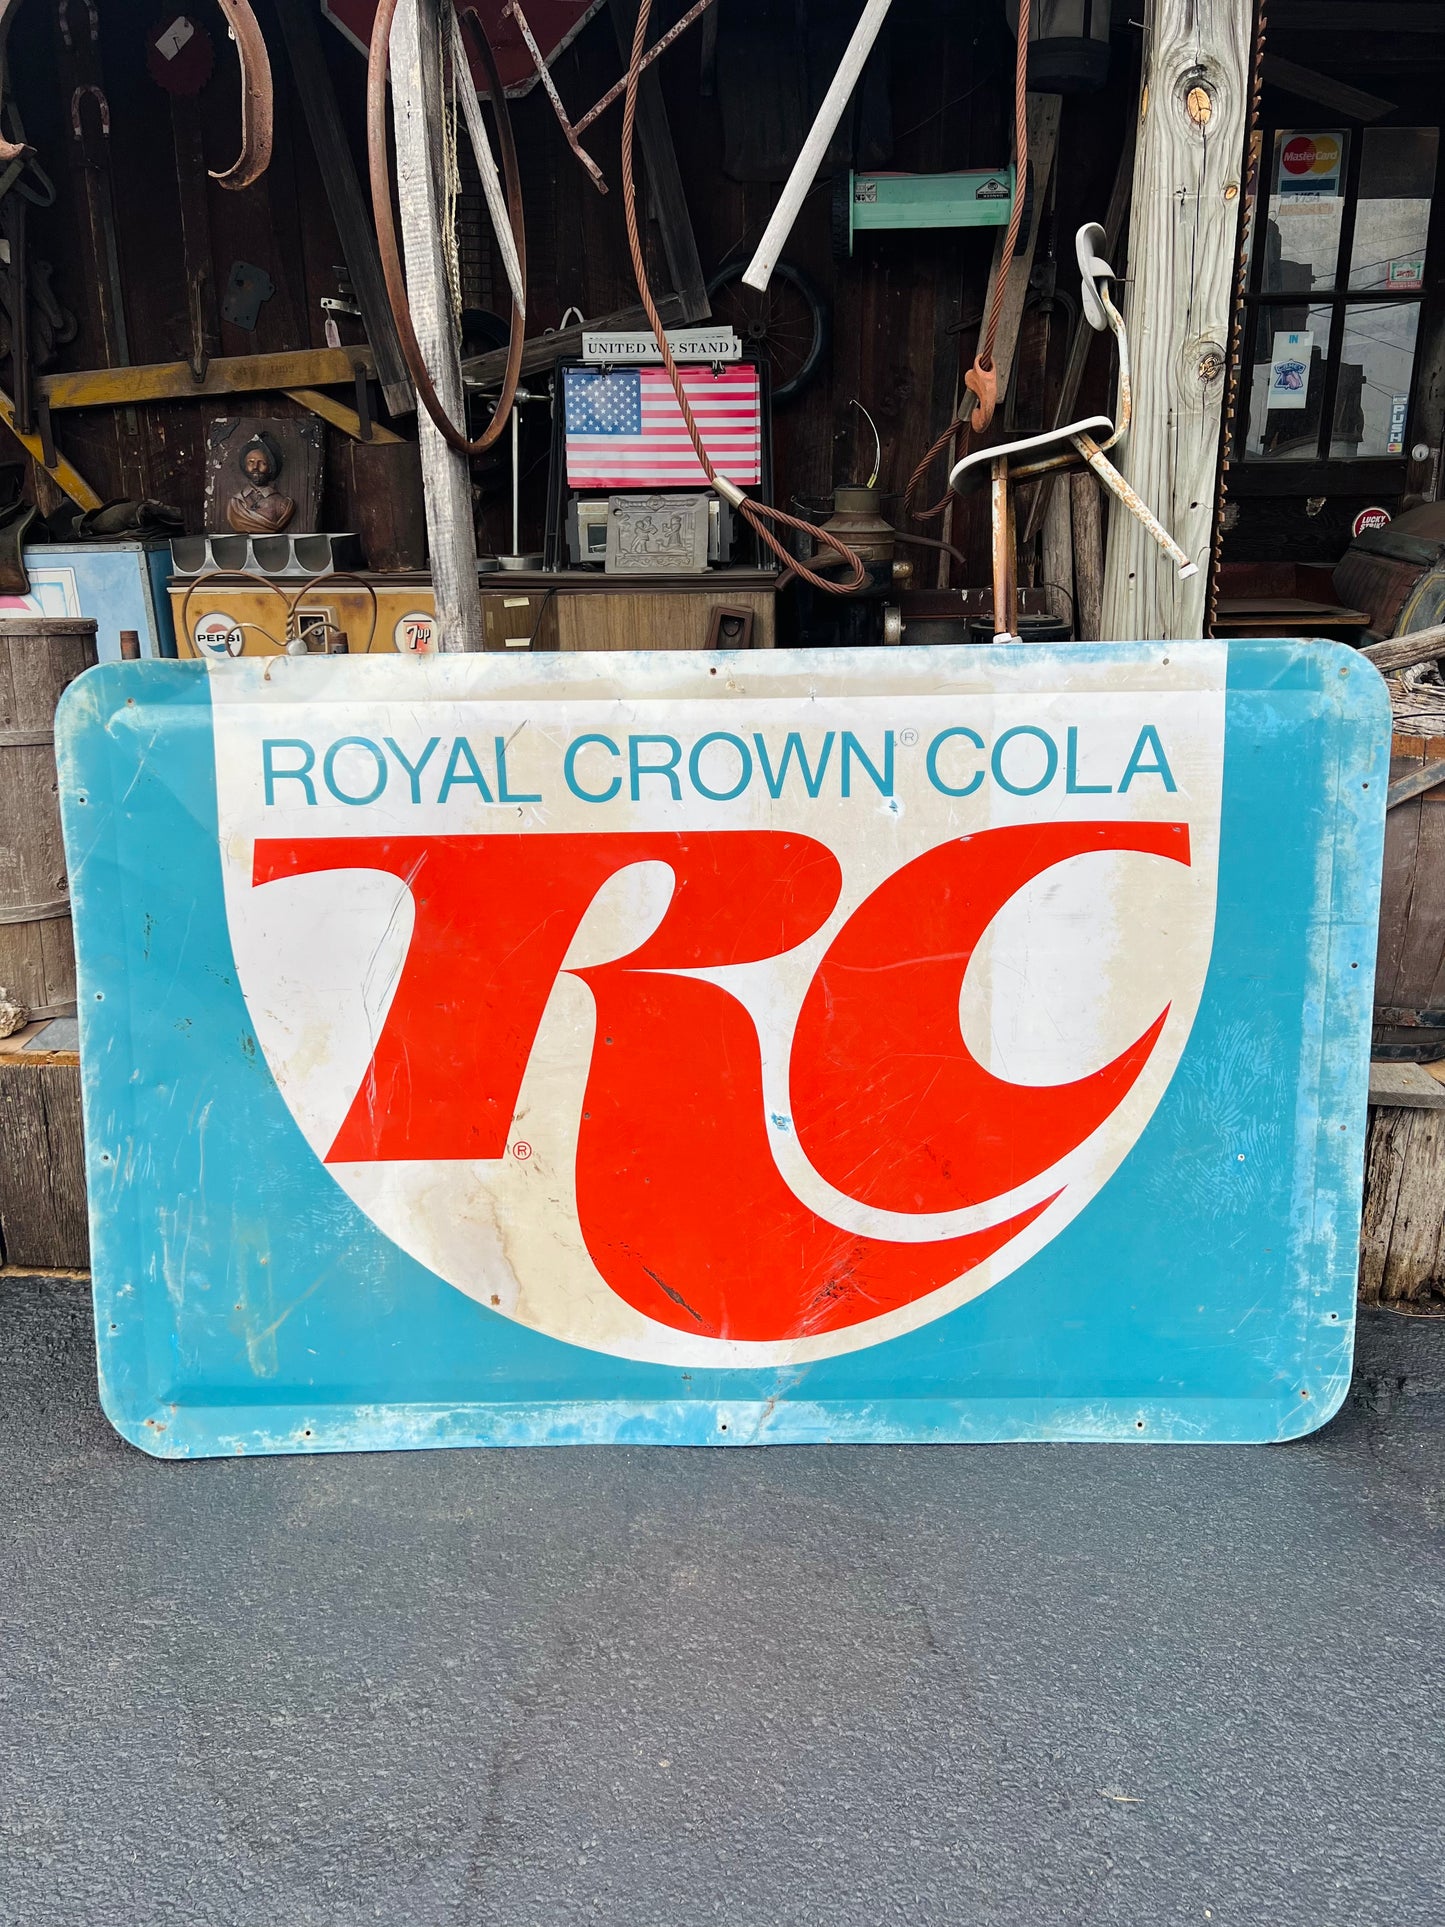 RC Cola Sign Vintage Royal Crown Cola Original